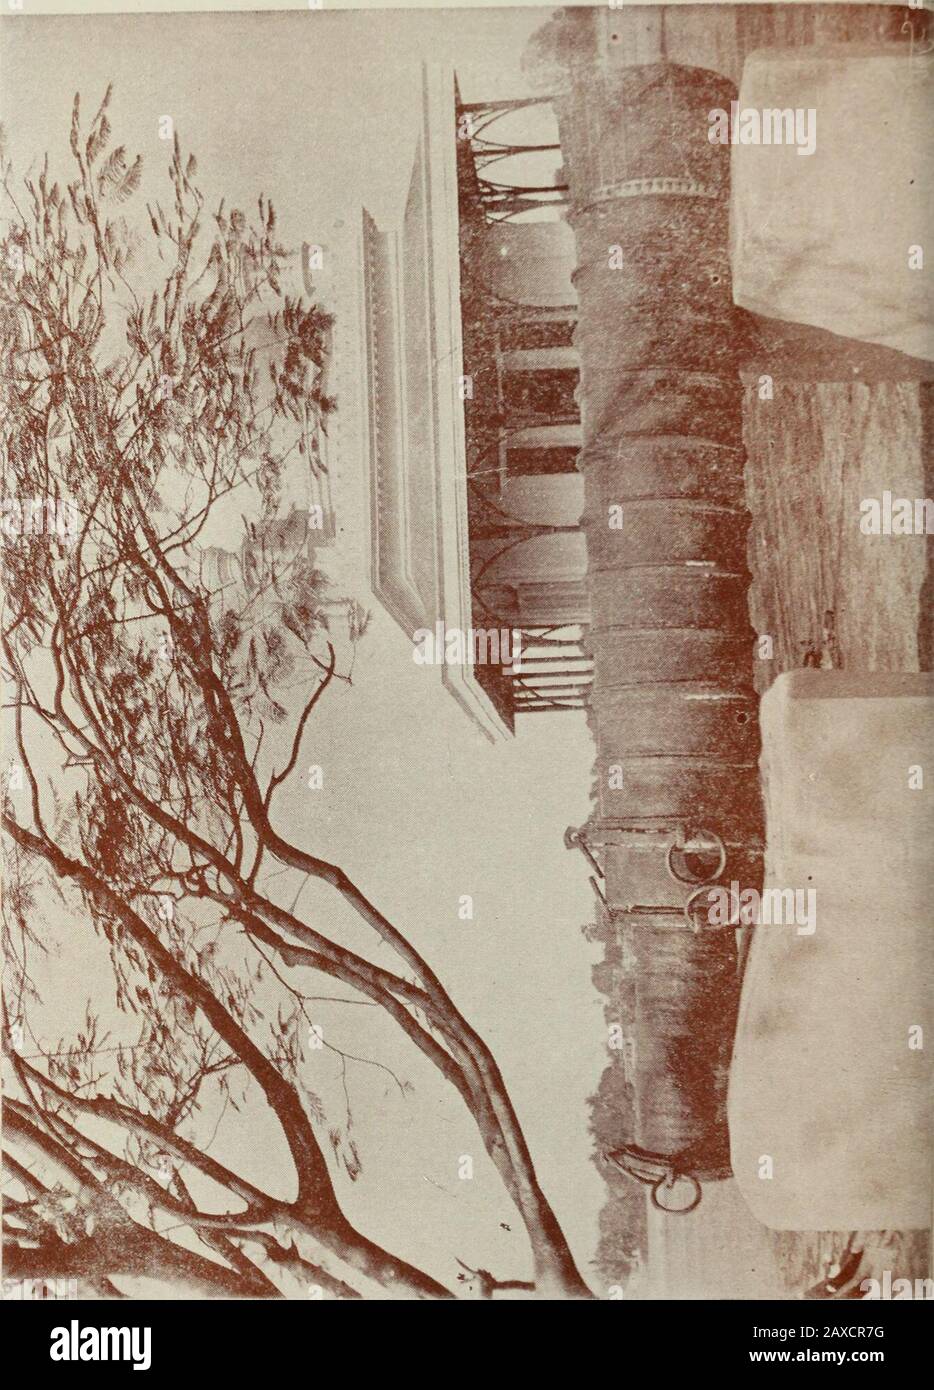 Der Musnud von Murshidabad (1704-1904/05) ist eine Zusammenfassung der Geschichte von Murshidabad für die letzten zwei Jahrhunderte, an die Notizen von Orten und Objekten von Interesse in Murshidabad angehängt sind. H. 3. Der Körper g-uards Viertel. 4. Die Khansamani und Farrashkhana. 5. Die Baitakkhana und Mahalsara. 6. Der Uhrturm mit eisernem Geländer. 7. Die Imambara. 8. Der Musjed am Flussufer in der Nähe des Southgate. 9. Der Musjed am Flussufer in der Nähe des Palastes. 10. Die alte Madina. 11. Das Baburchi-khana Viereck. In der Killah gibt es mehrere Flagshipstappen, von denen jedoch nur zwei g-enerisch verwendet werden, die eine Stockfoto